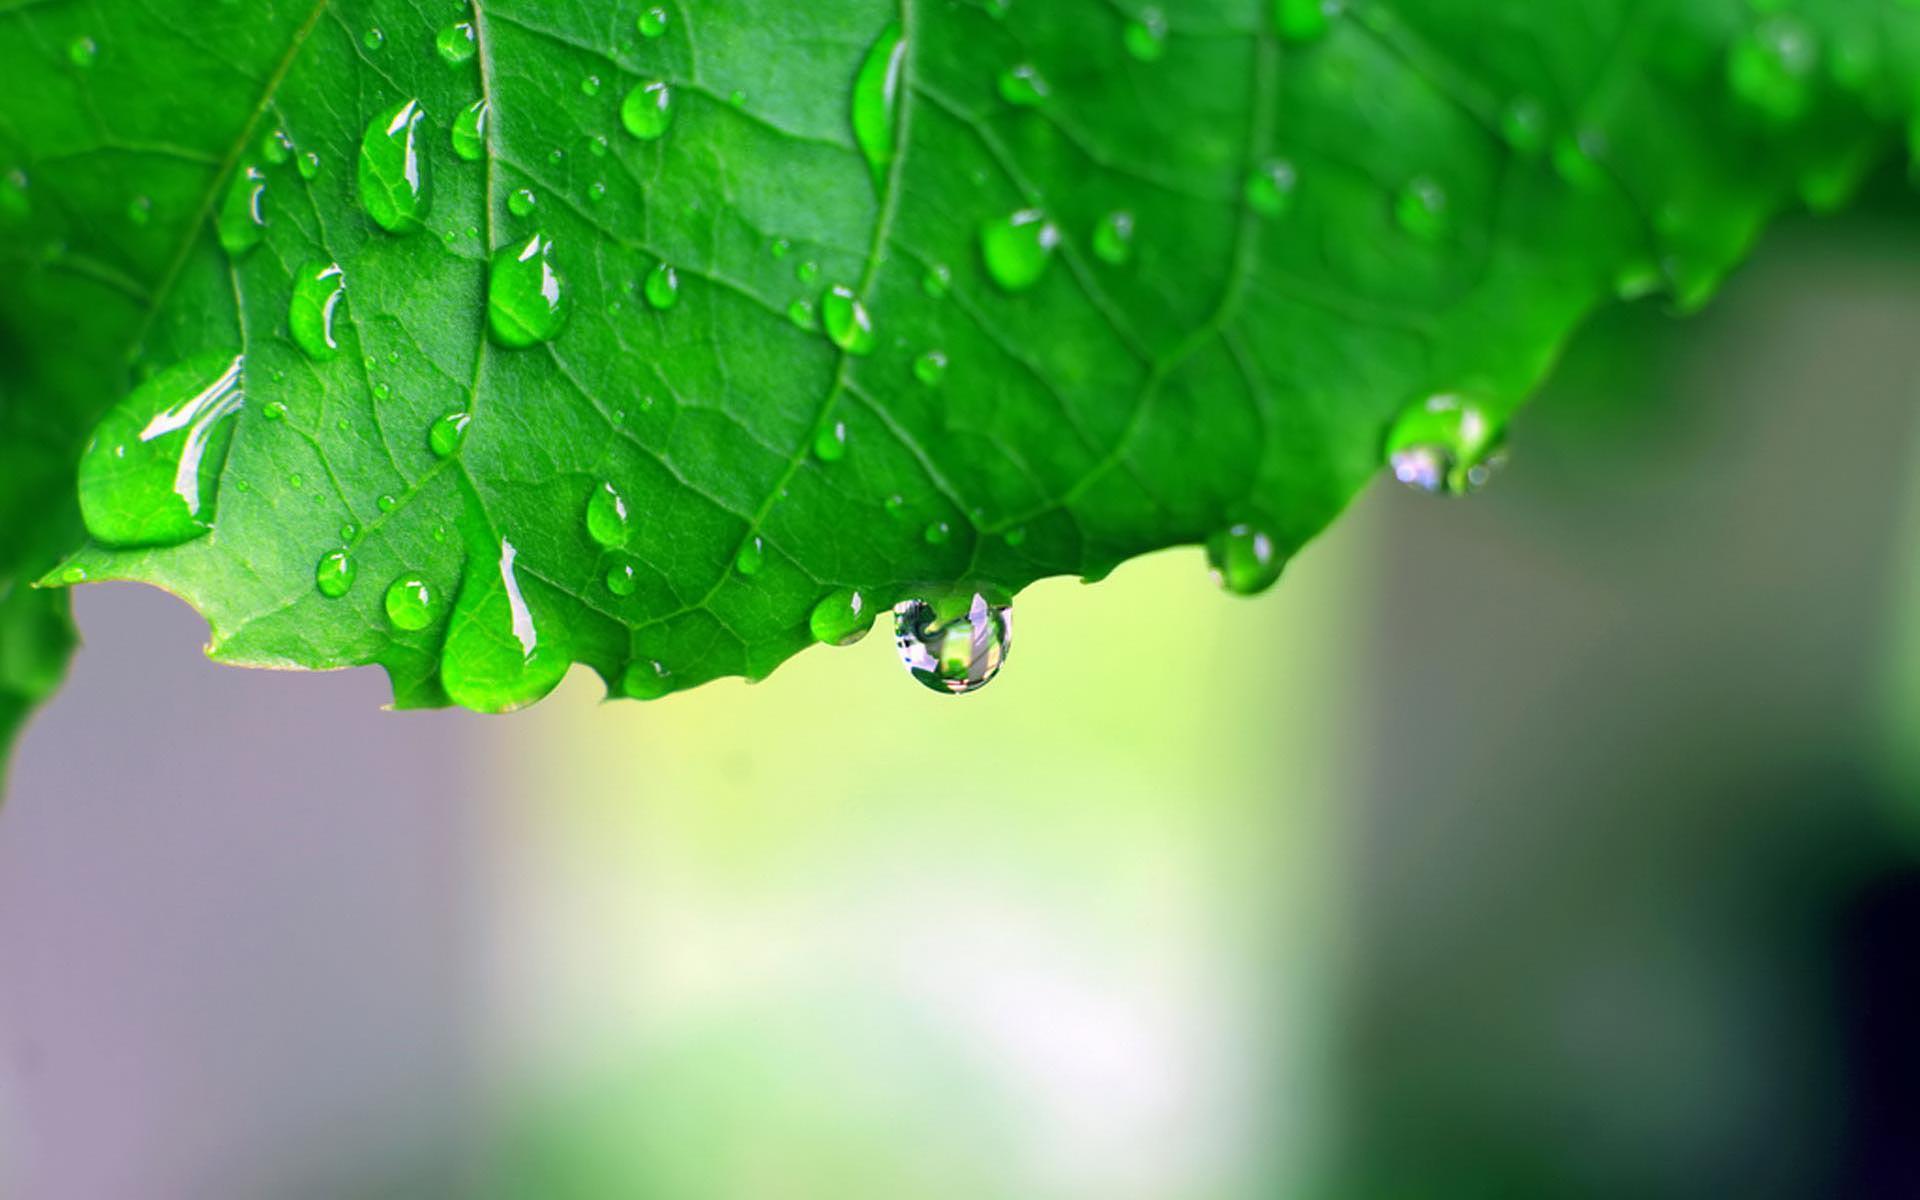 Monsoon Leaf HD desktop wallpaper, Widescreen, High Definition